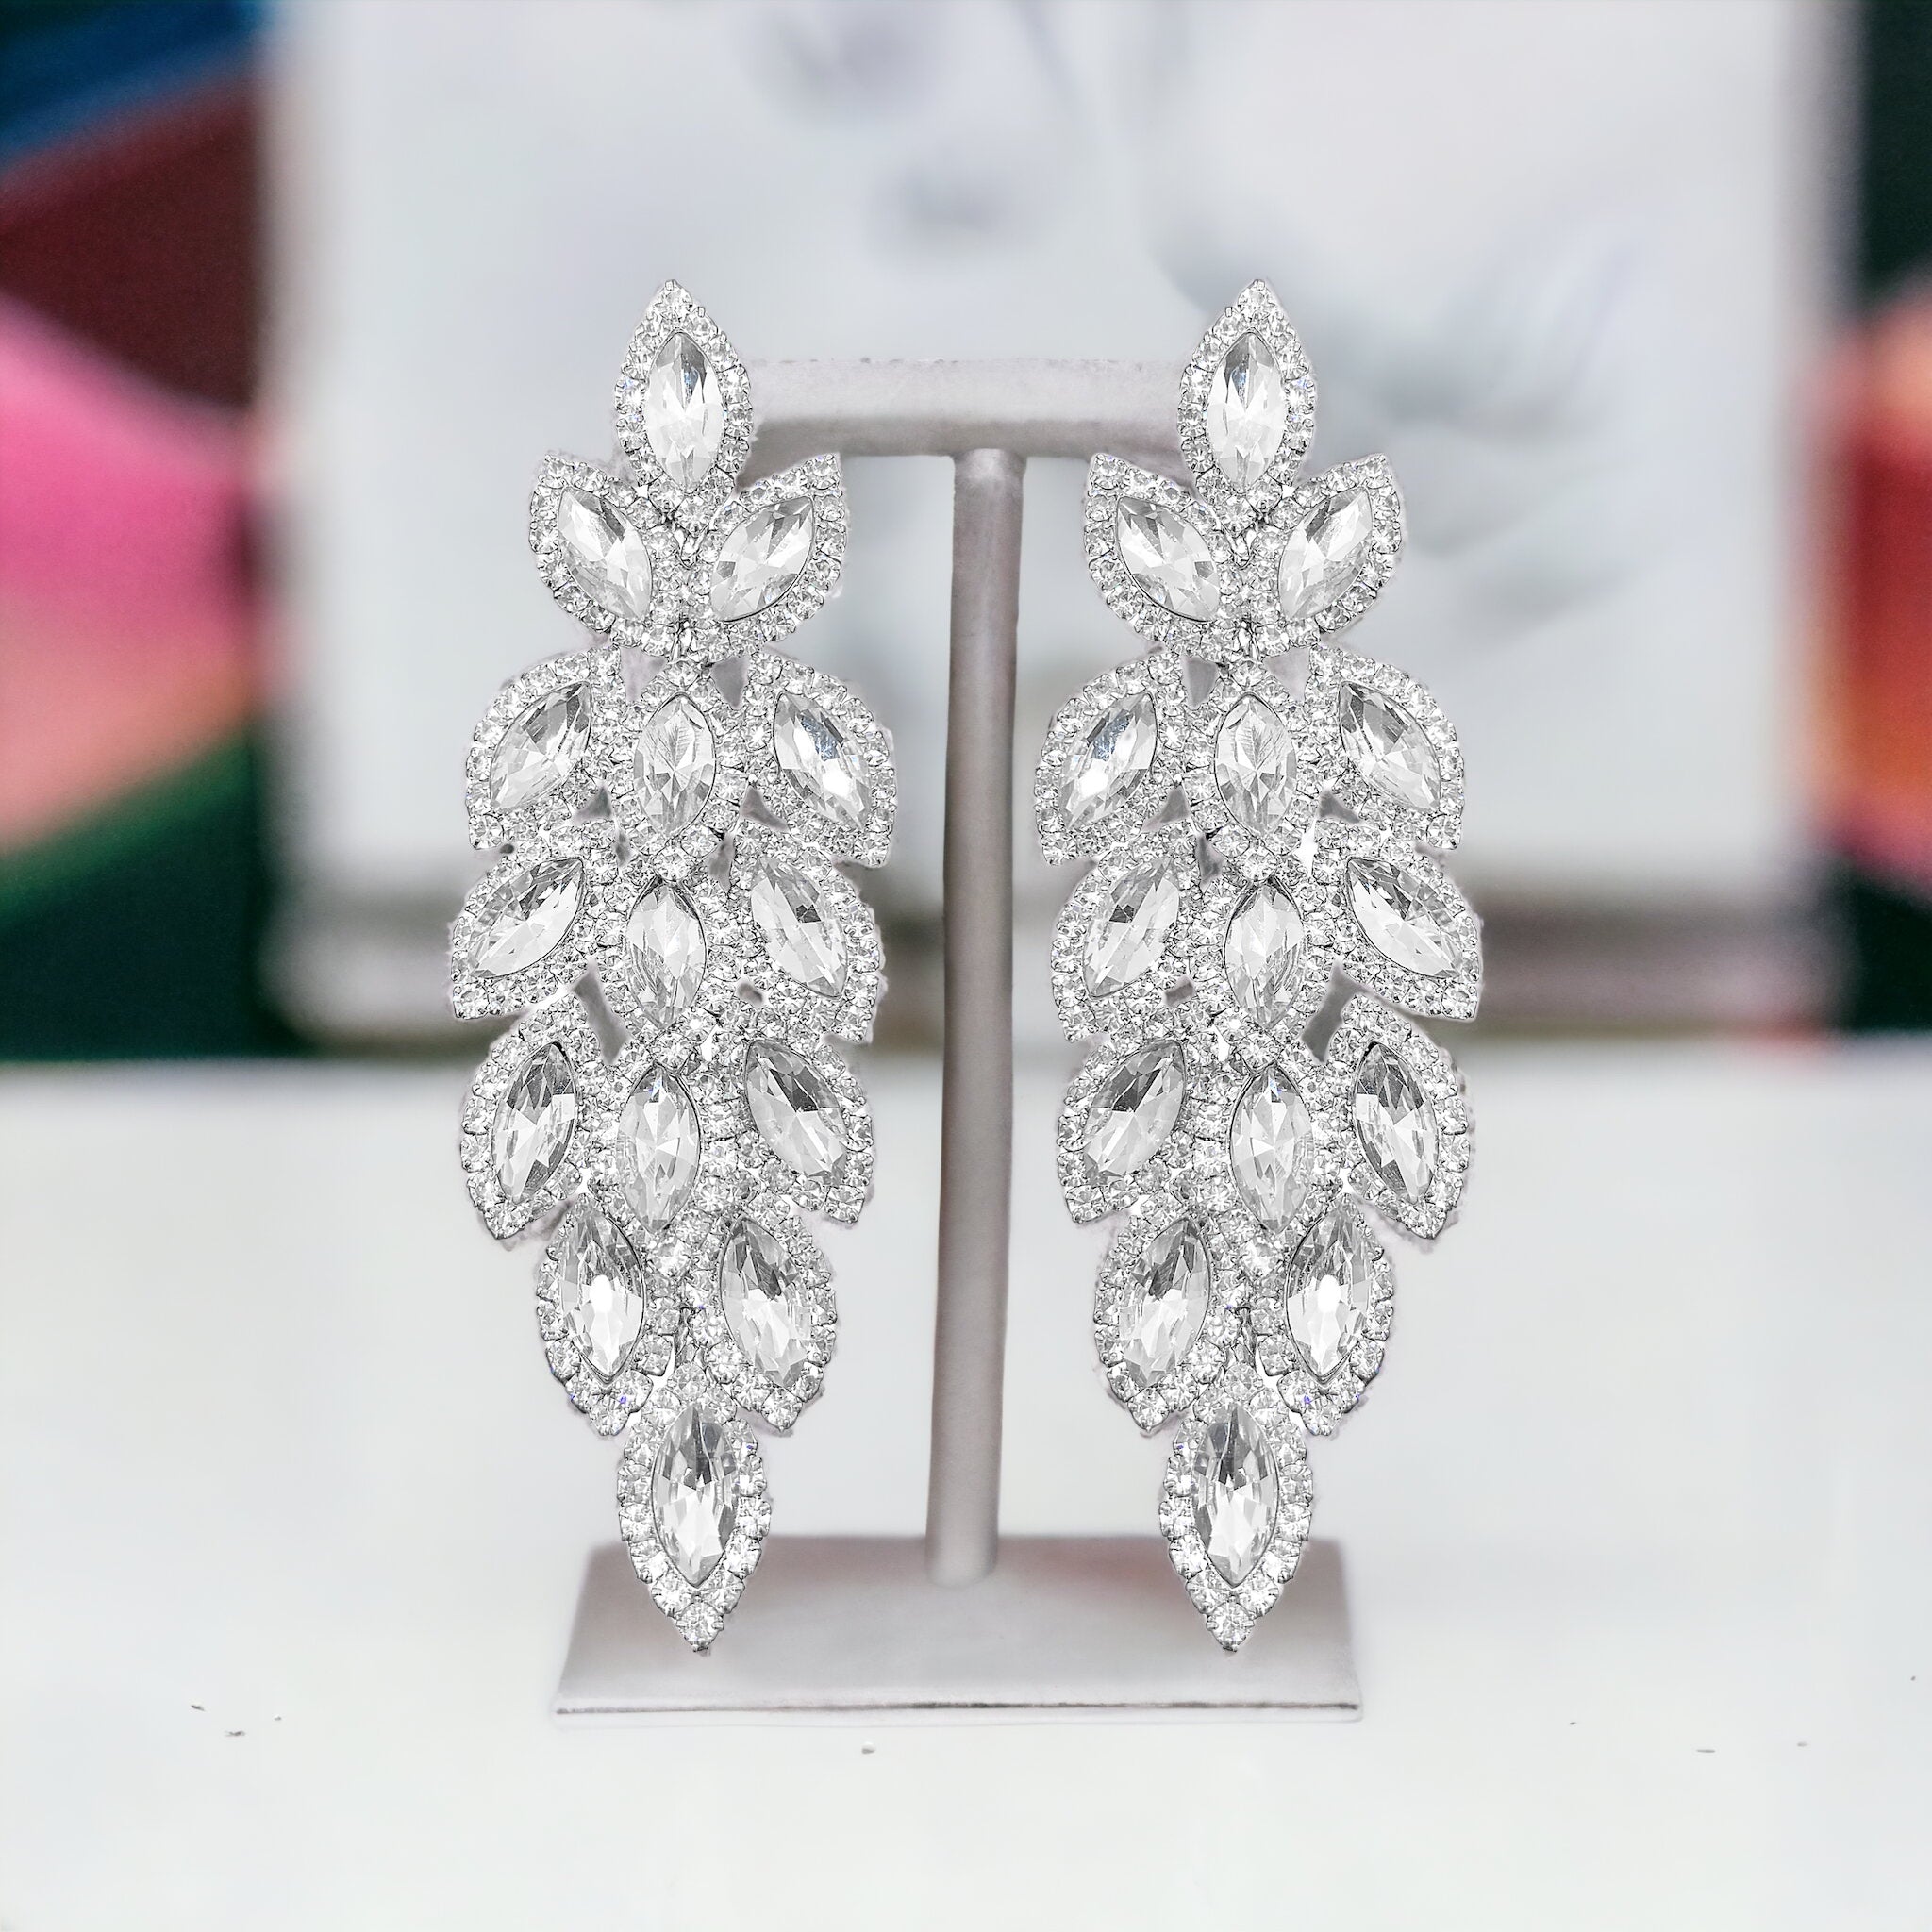 Sydney - clear silver marquise rhinestone earrings